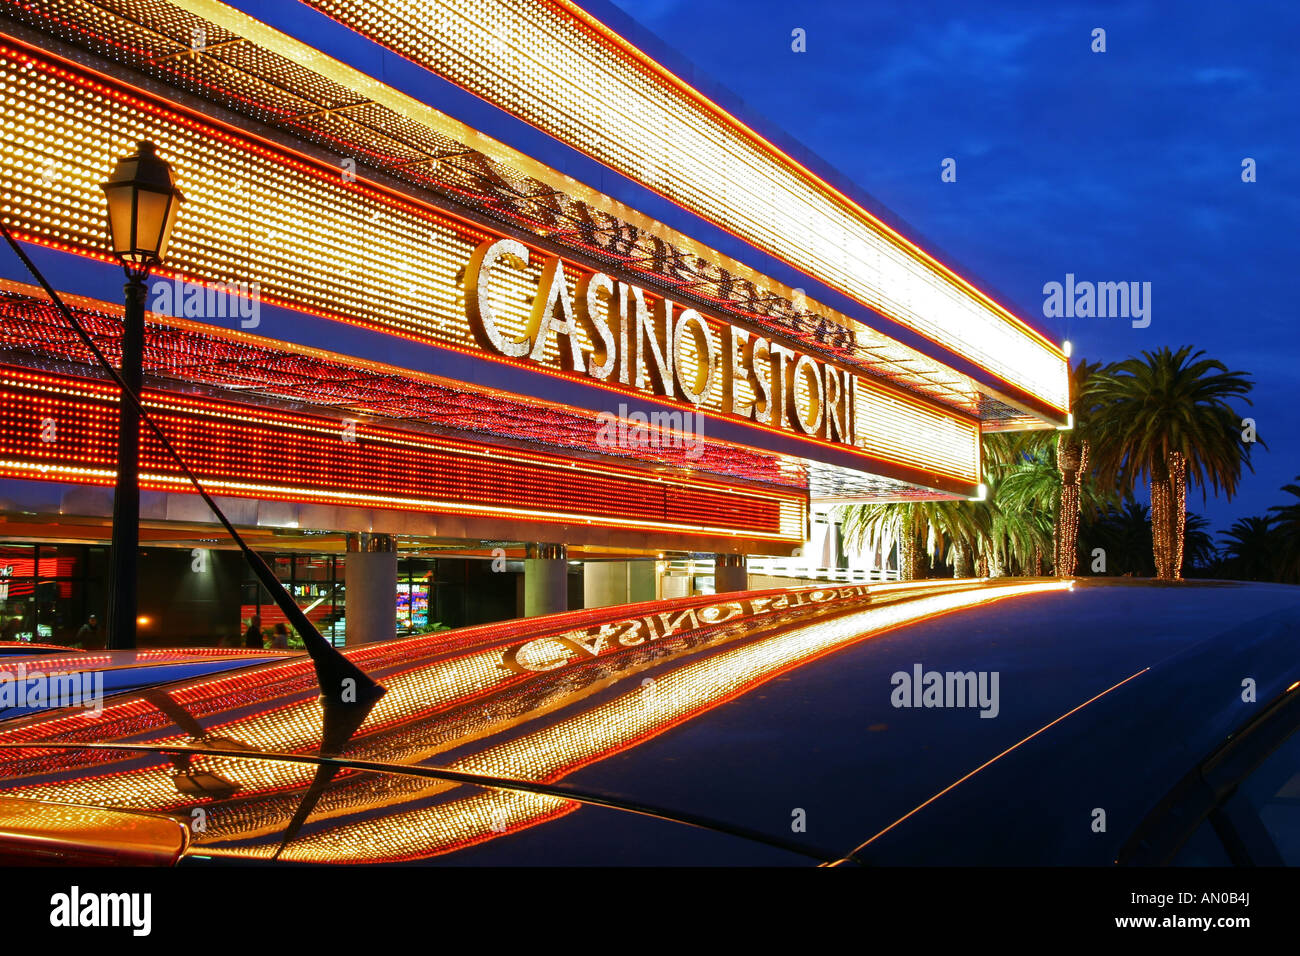 Europes largest Casino in Portugal Estoril, mirroring of lights | Europas größtes Casino, spiegelnd im Abendlicht Stock Photo